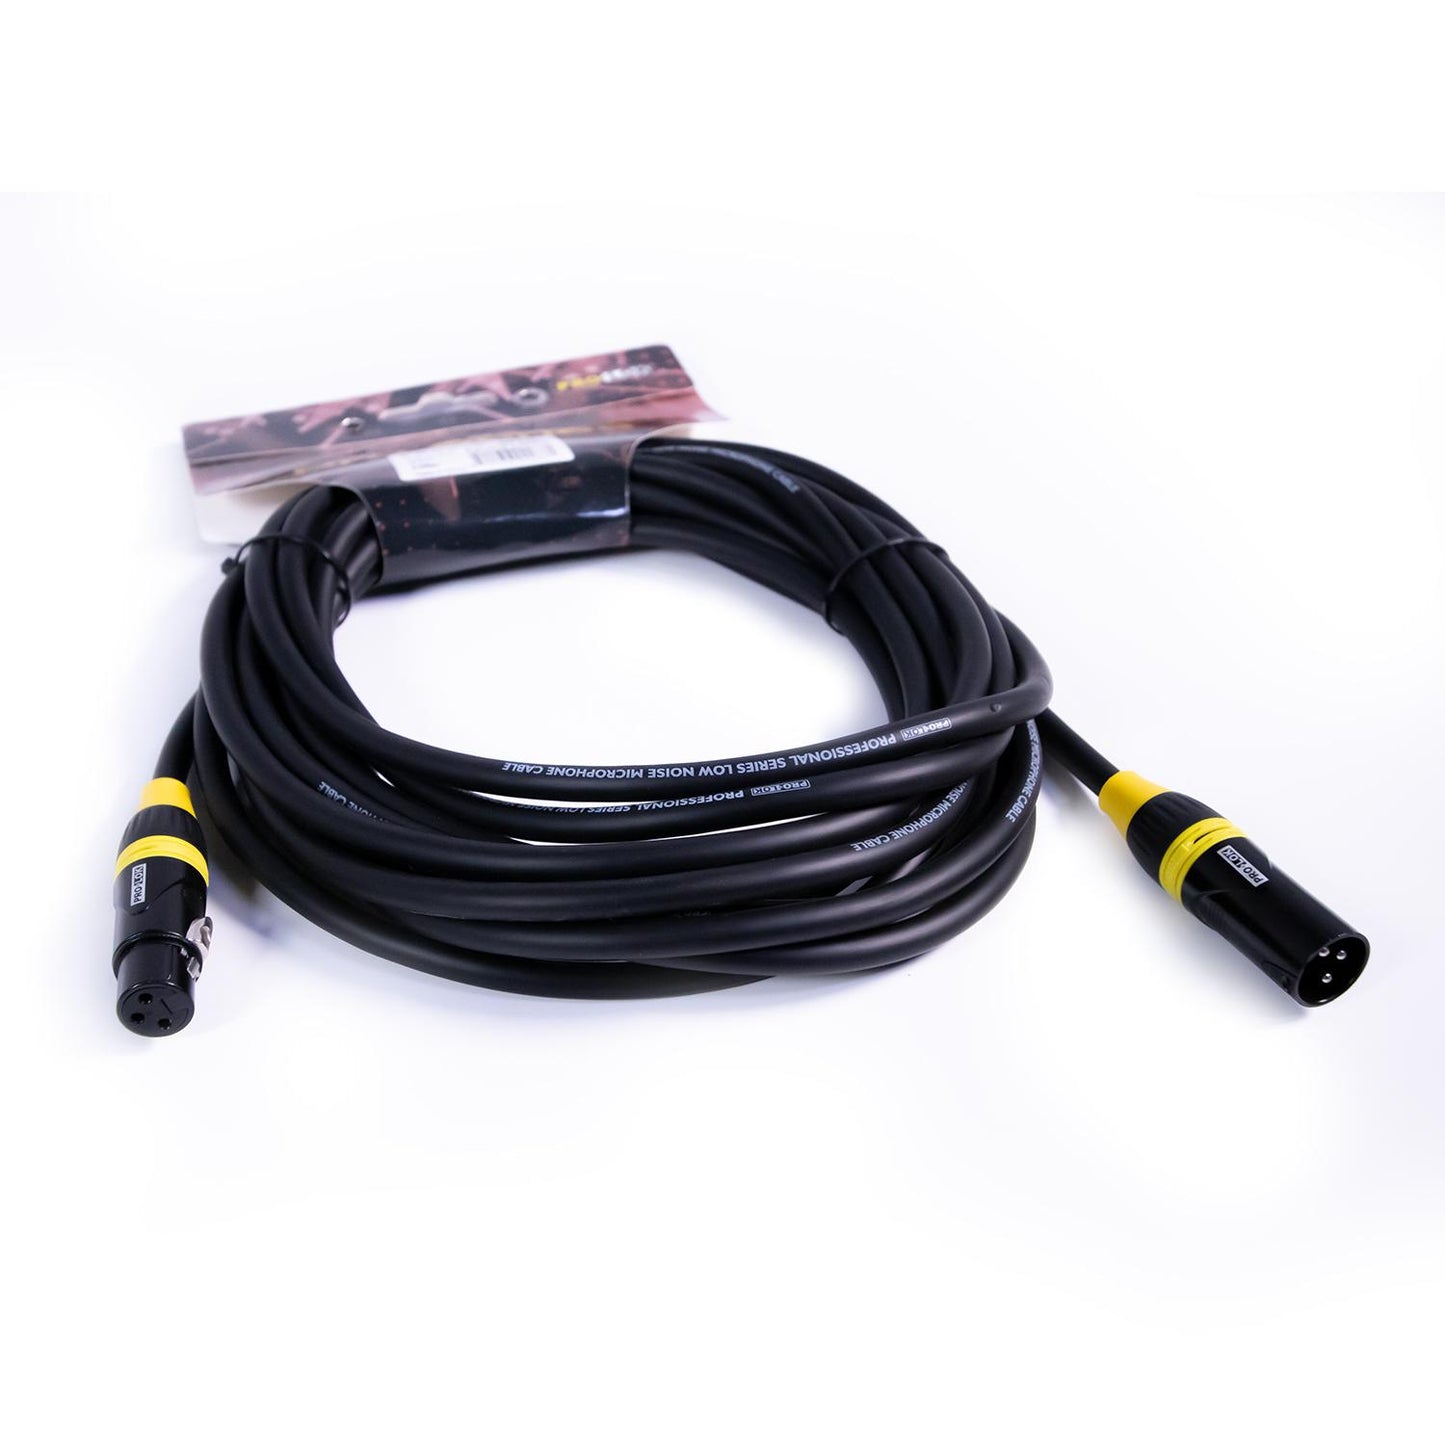 Cable para Micrófono de 20" PROS20-MIC TROPICAL